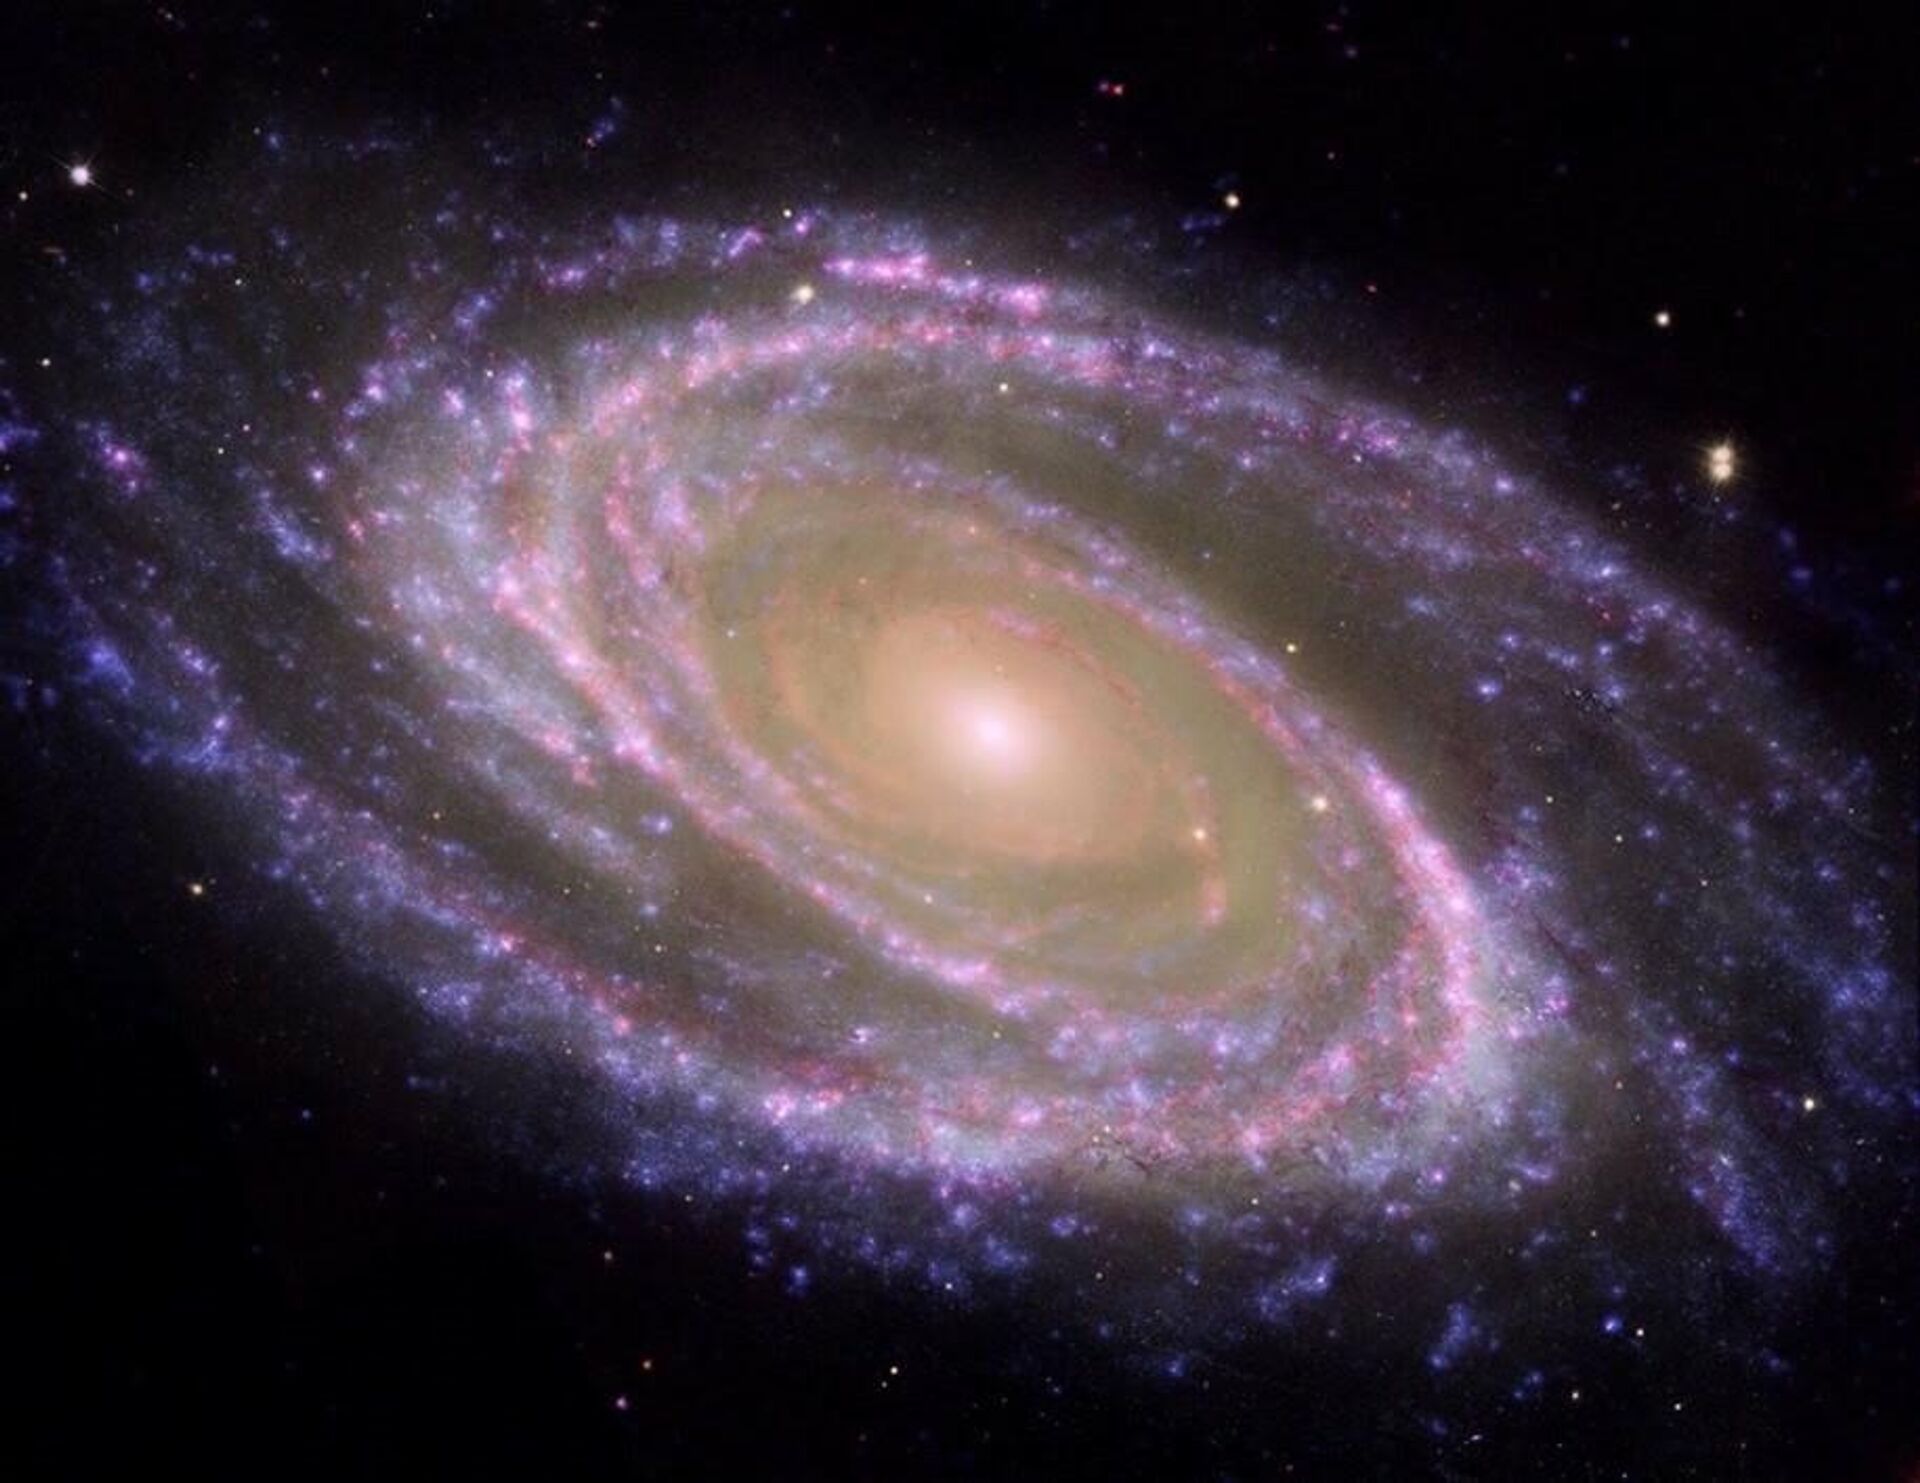 Esto es una galaxia espiral cercana, la M81, en el centro está el bulbo (rojizo) y el exterior (azulado) los brazos espirales, donde se crean las estrellas - Sputnik Mundo, 1920, 11.06.2021